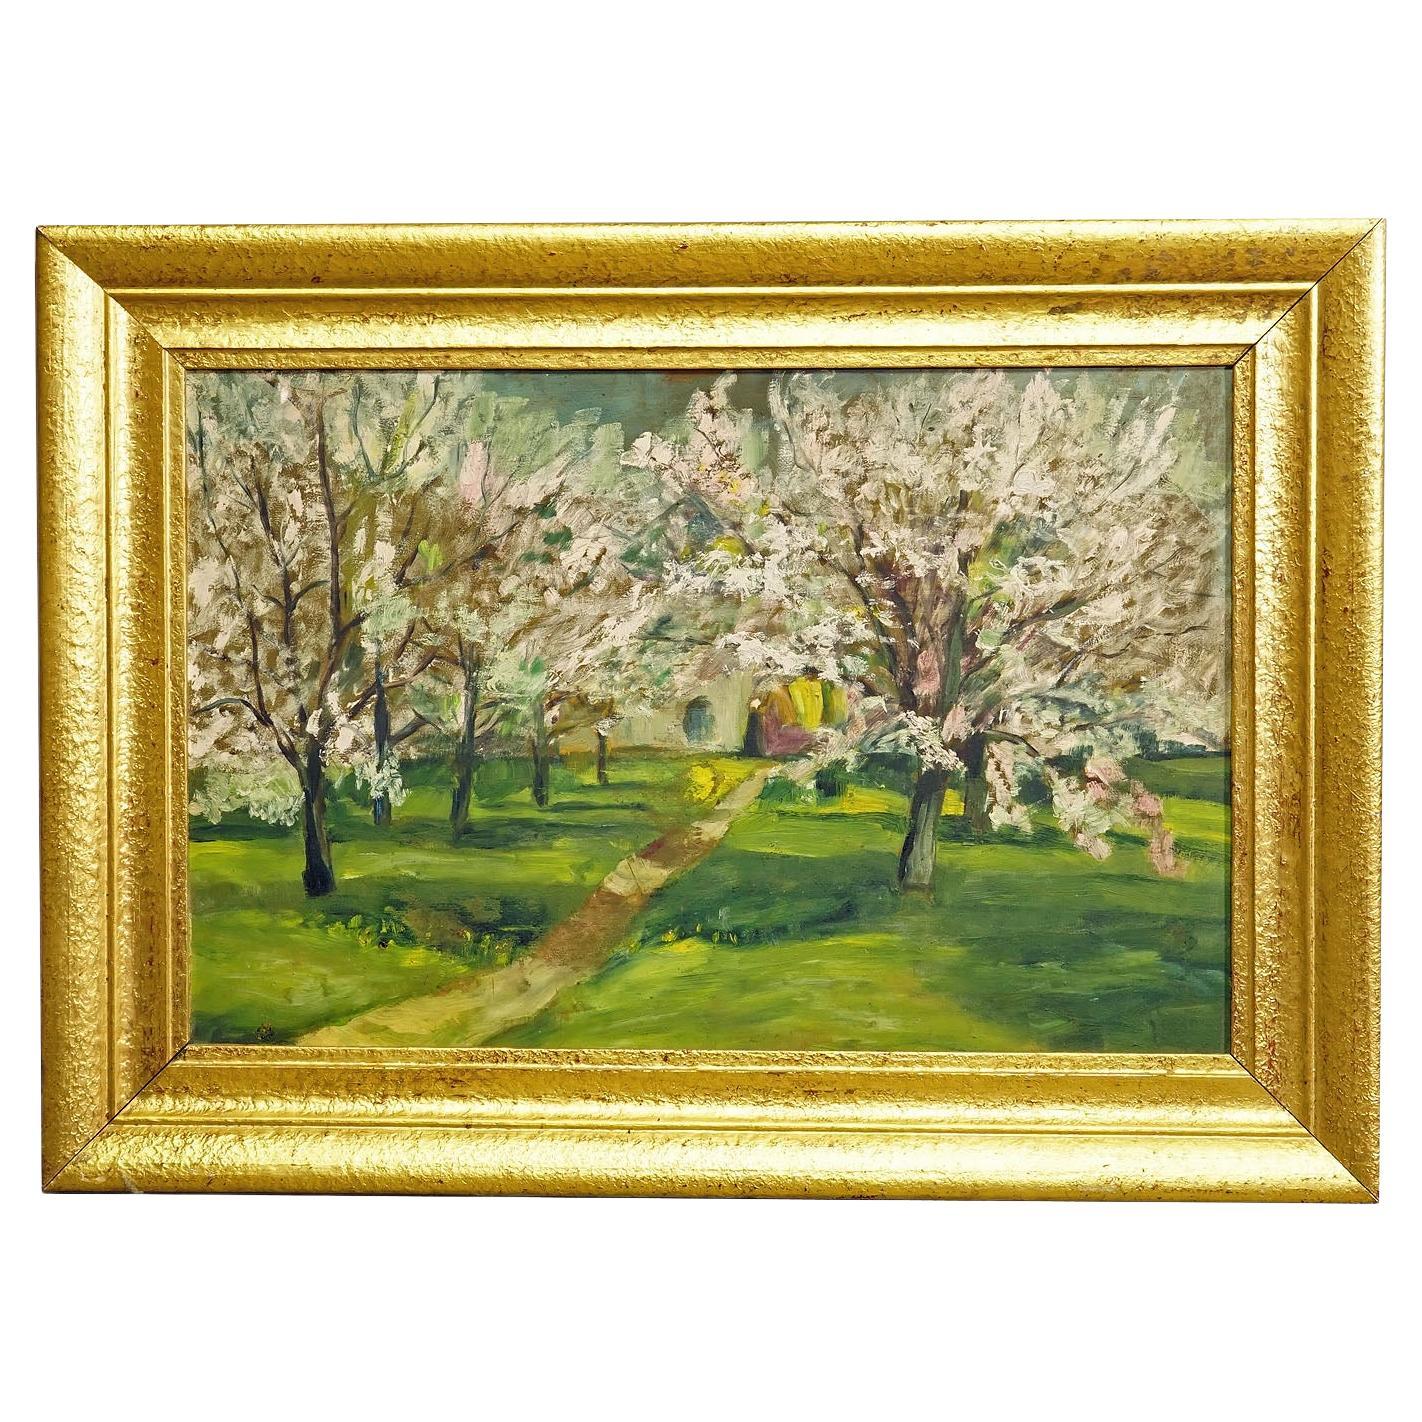 Peinture impressionniste d'un jardin avec des pommiers en fleurs